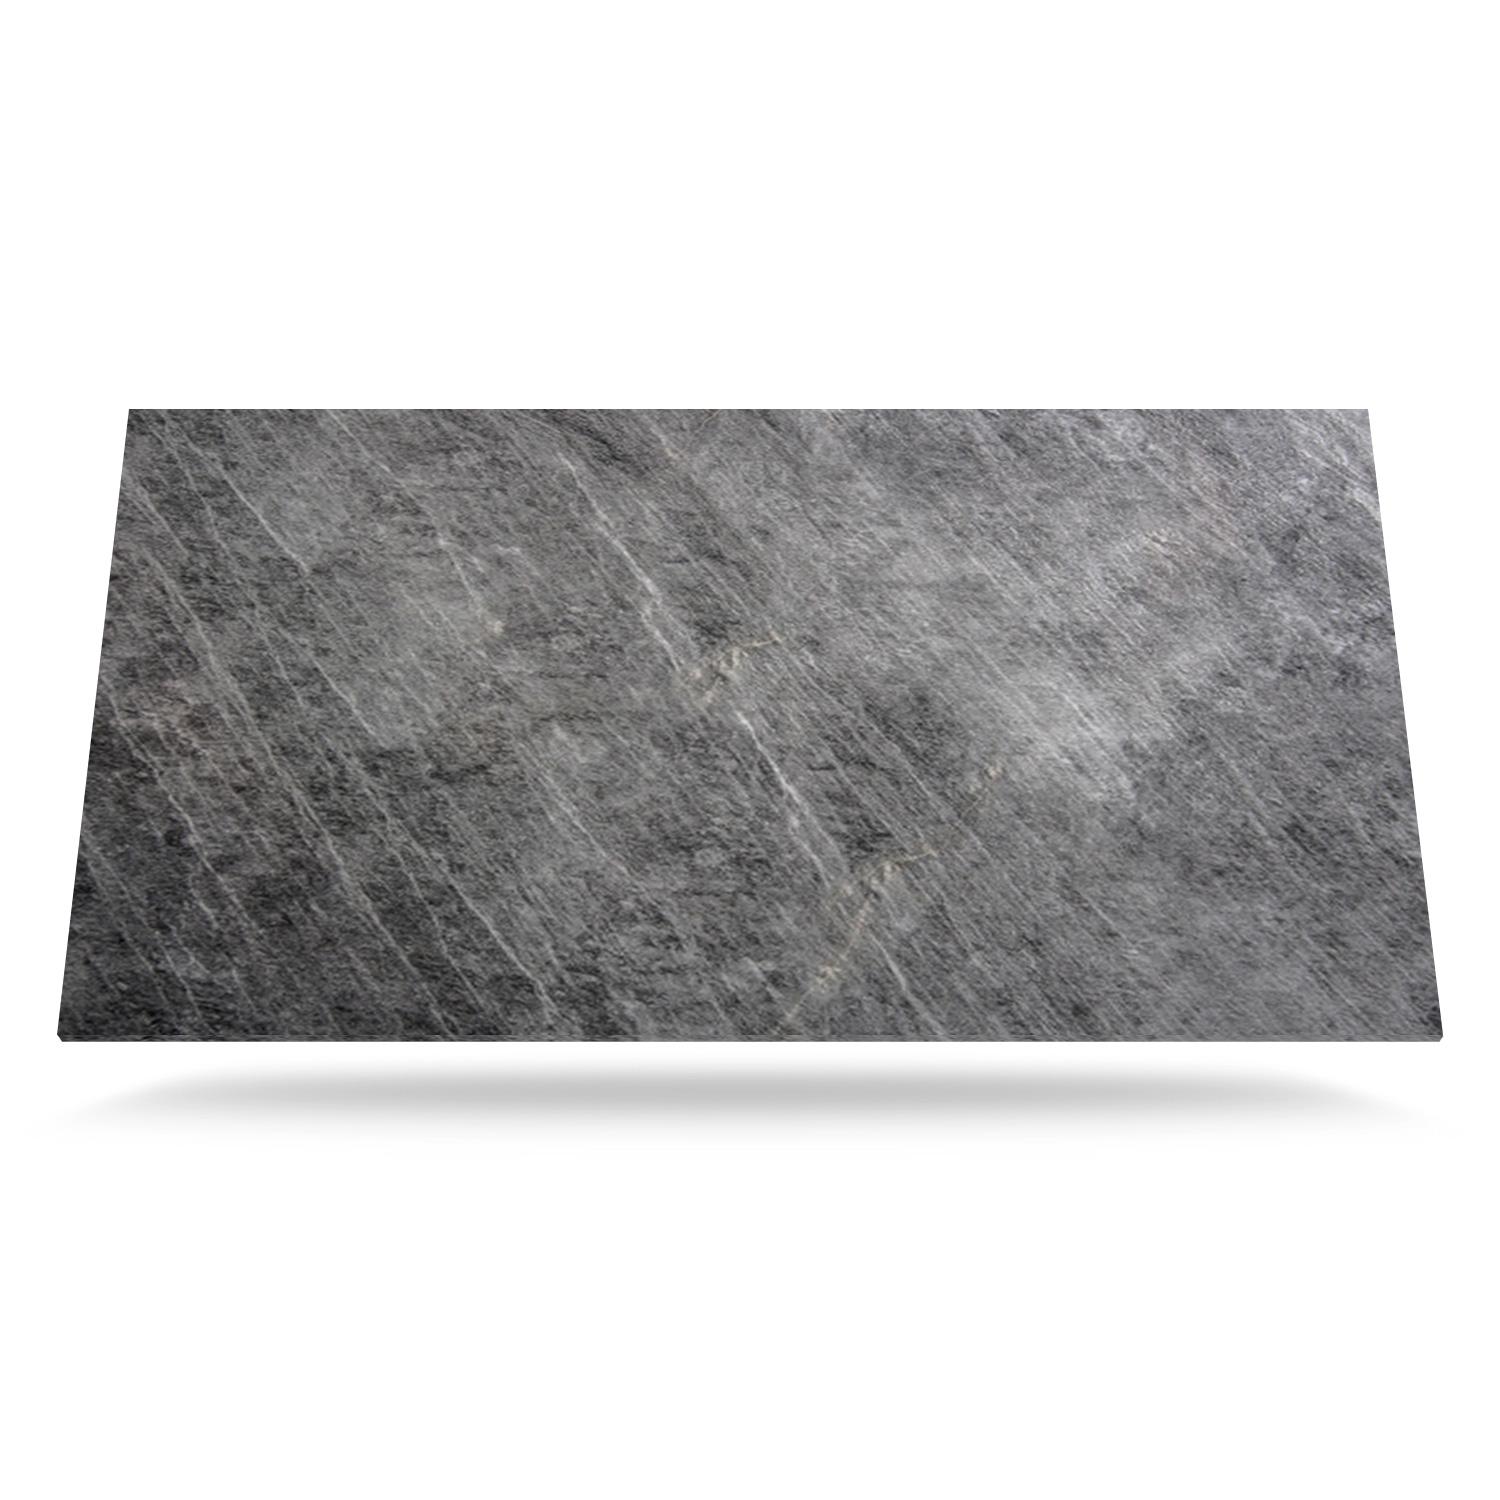 Mørkegrå med en stenet tekstur - Laminat bordplade på mål - 2275